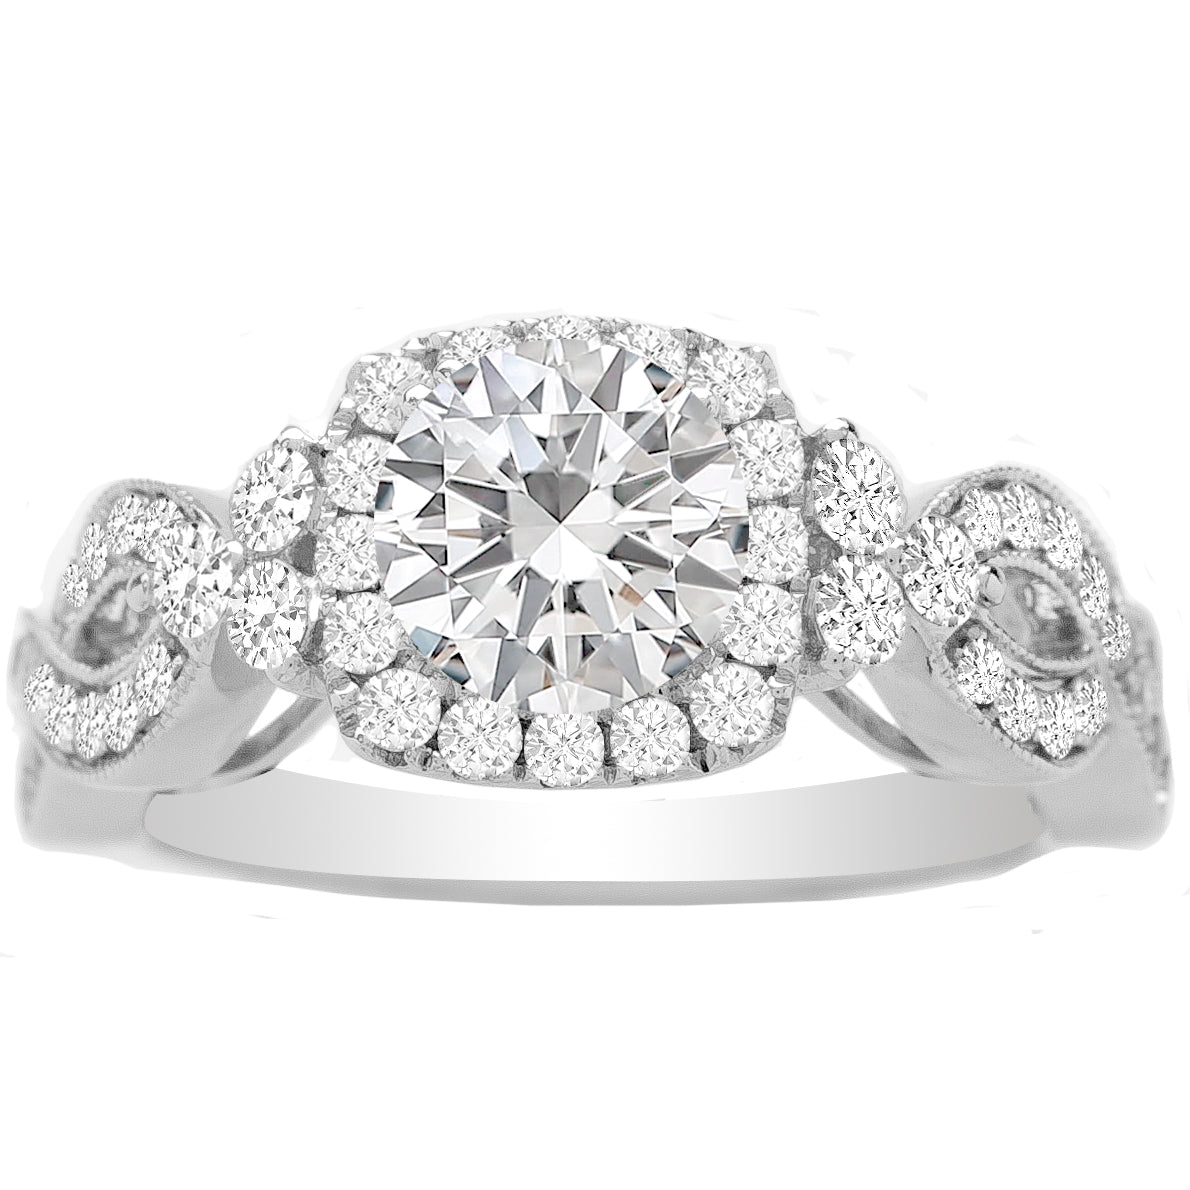 Jacinda Diamond Engagement Ring in 14K White Gold; 0.63 ctw